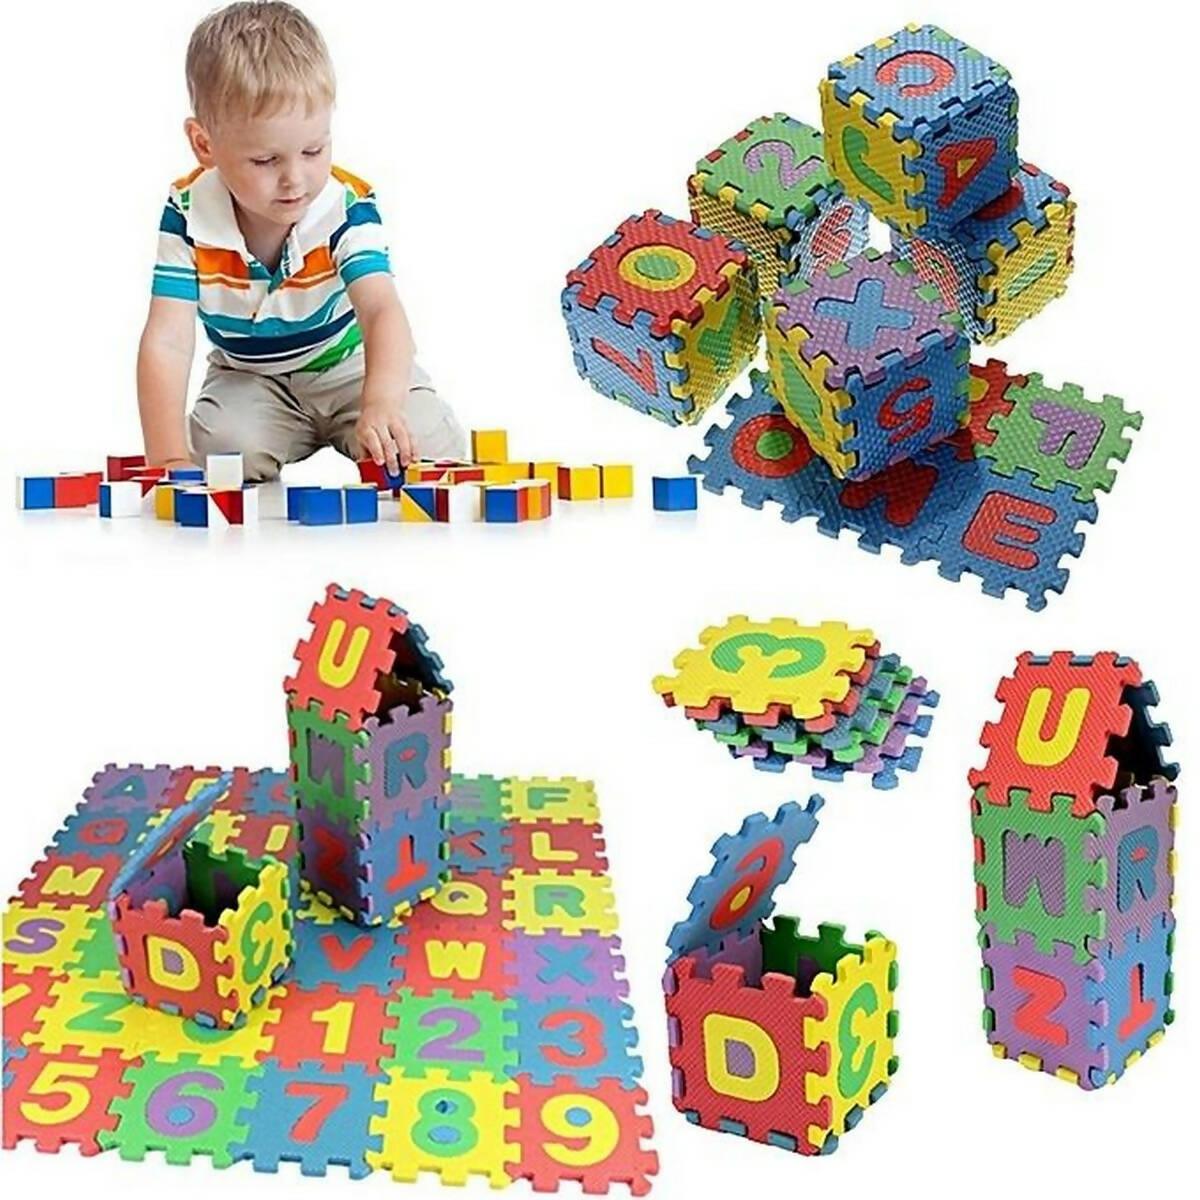 ABC Alphabets Puzzle Foam Floor Mat for Kids (12 x 12 cm tiles) - Multicolor - ValueBox